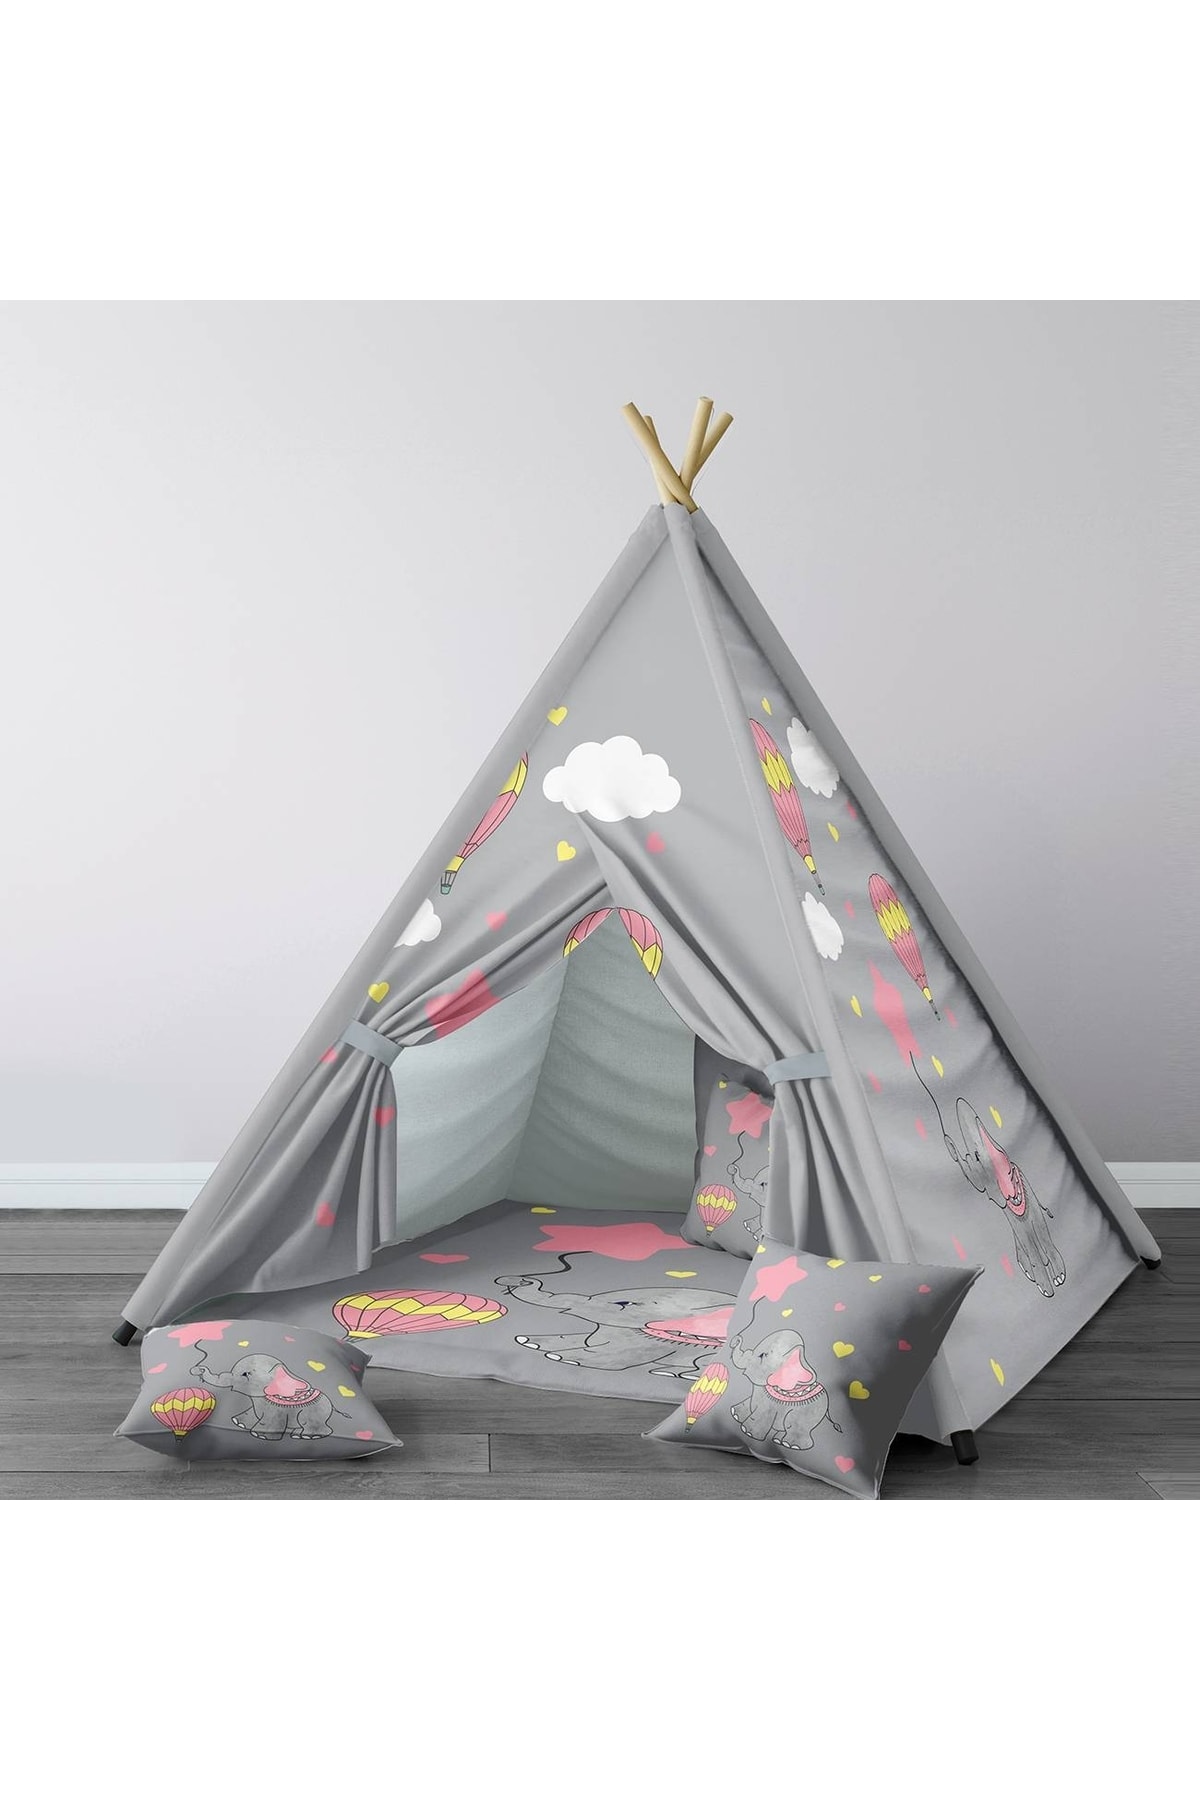 HET Concept Gri Bebek, Çocuk Odası Minderli/mindersiz Oyun Evi, Çadırı Model 0121